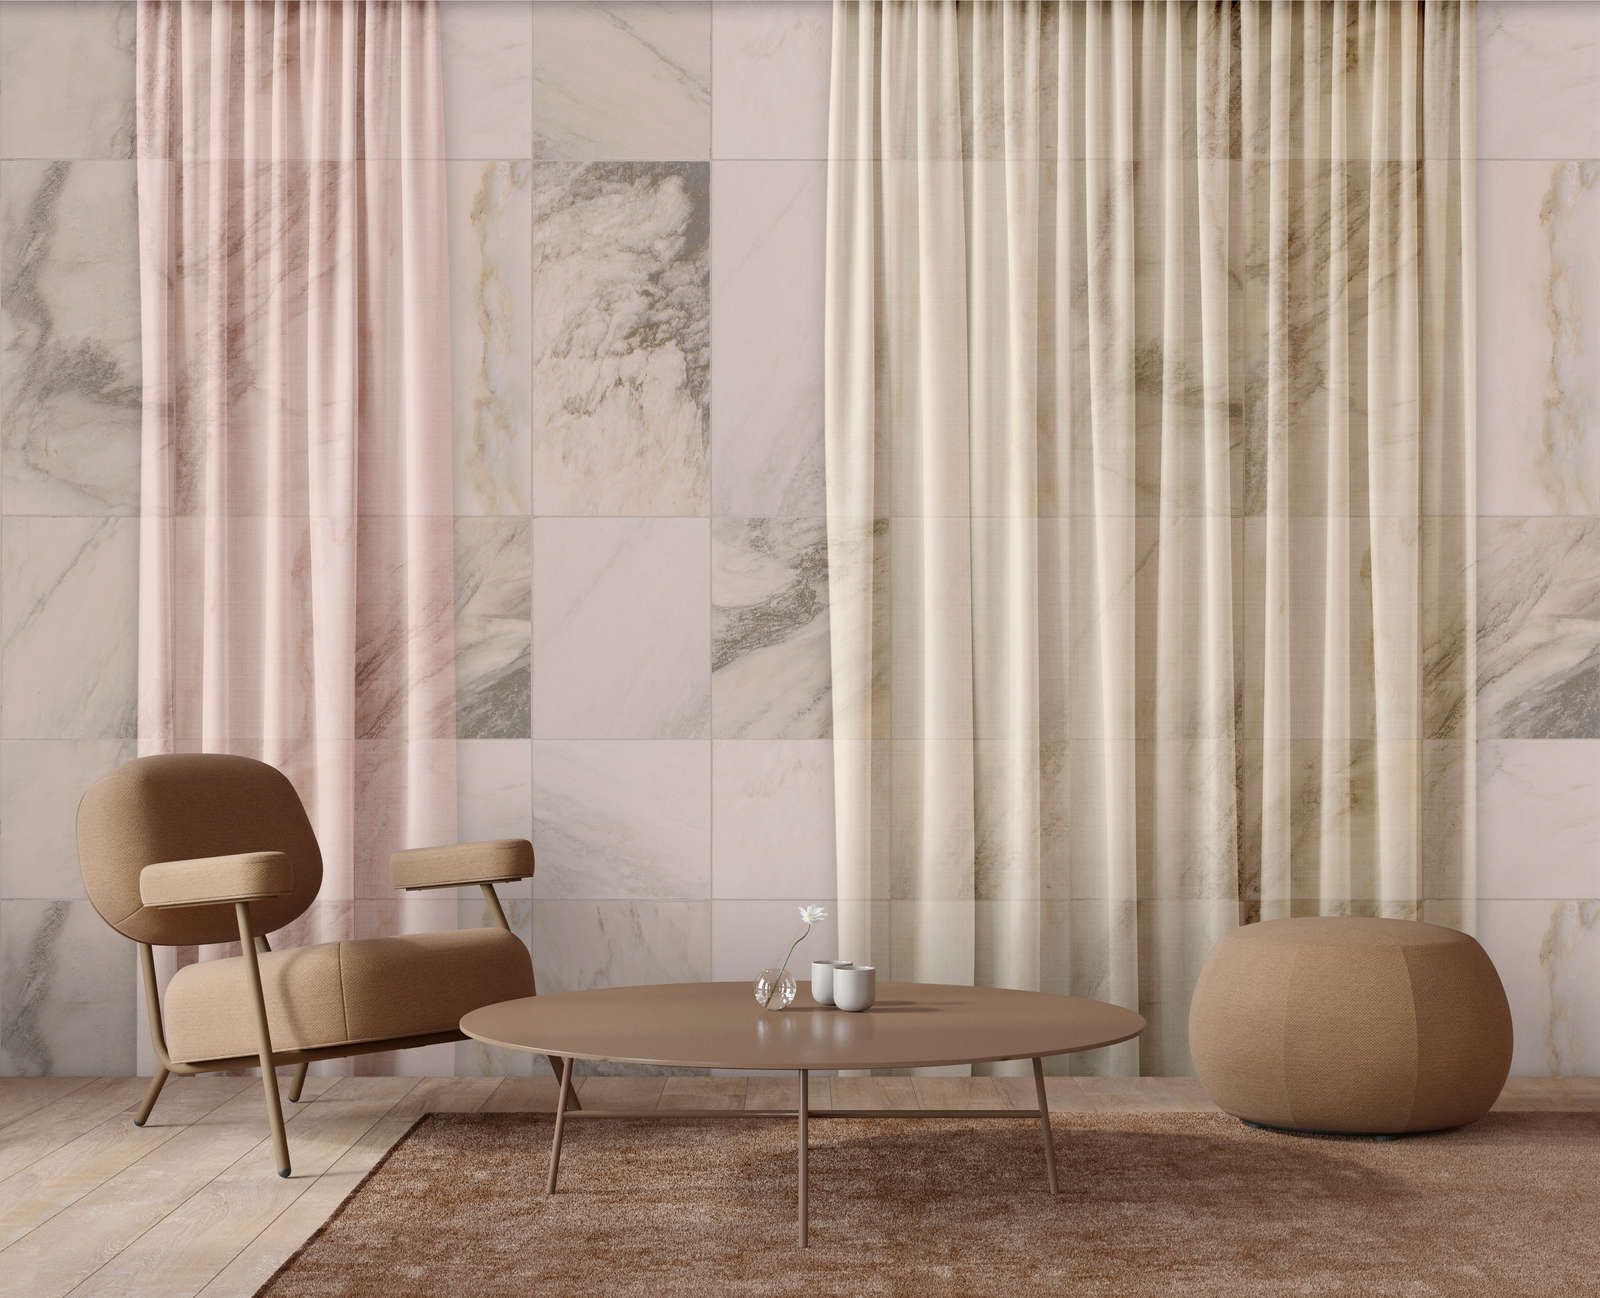             Digital behang »nova 3« - Subtiel vallende gordijnen voor een beige marmeren muur - Gladde, licht parelmoerachtige vliesstof
        